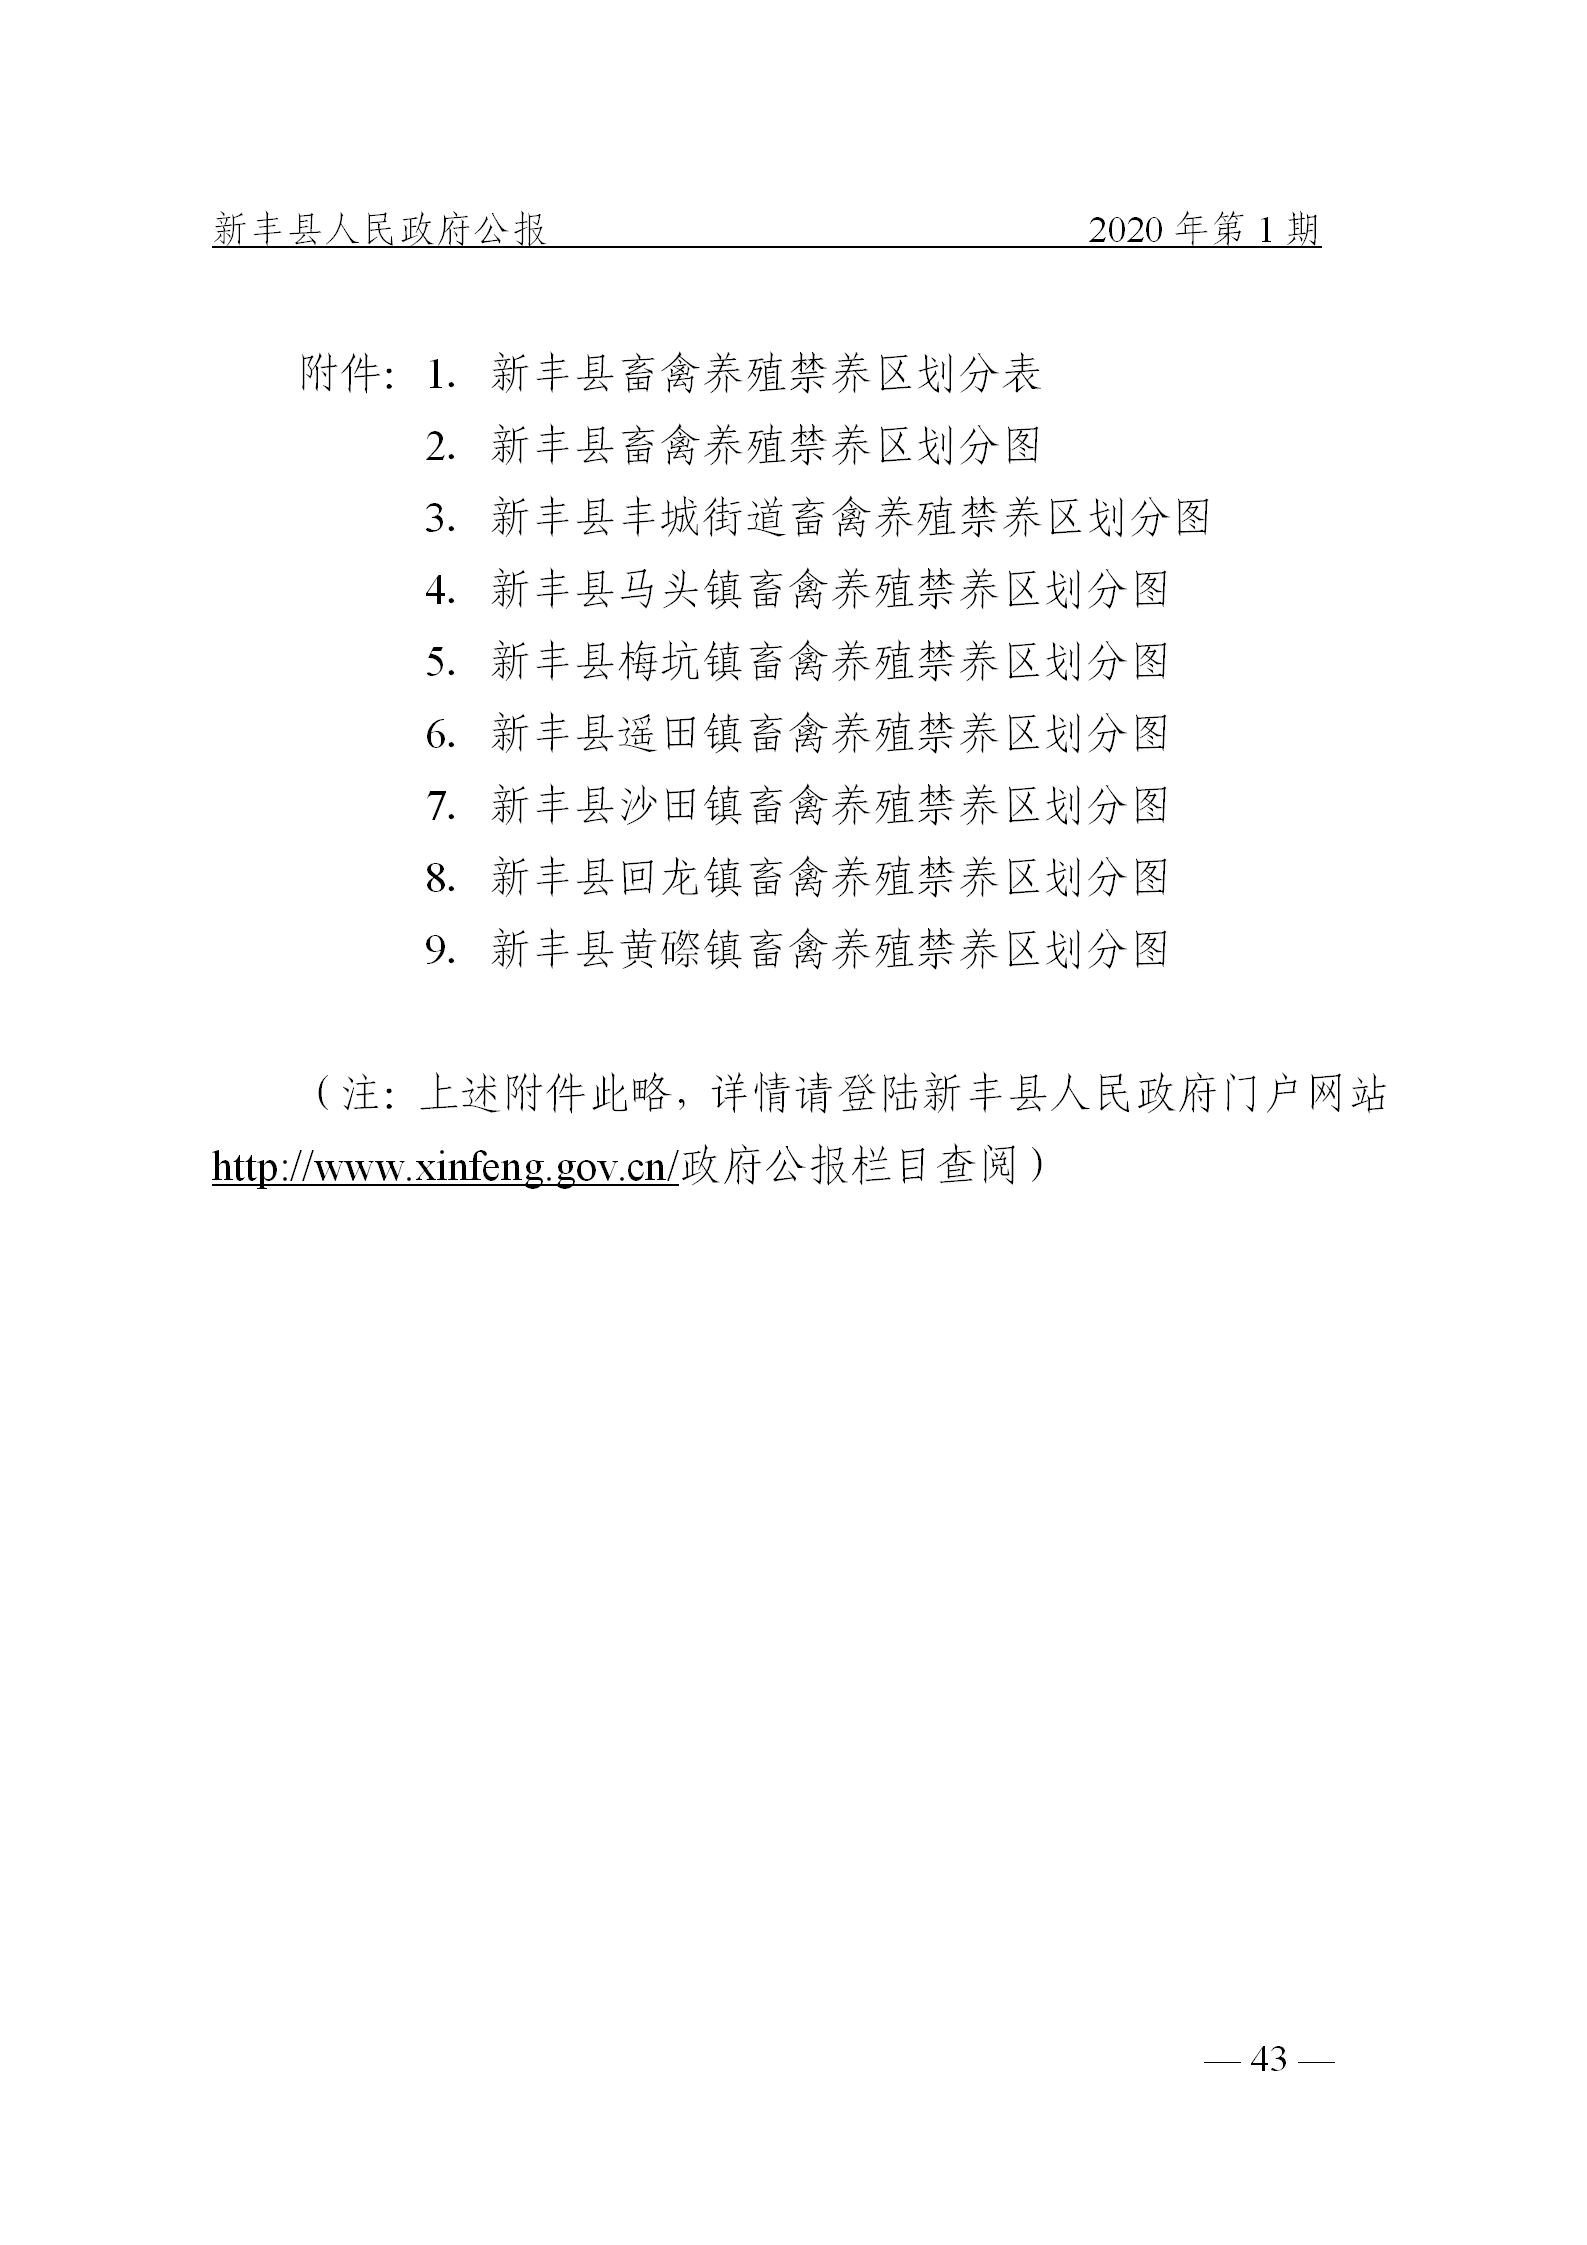 《新丰县人民政府公报》2020年第1期(1)_43.png